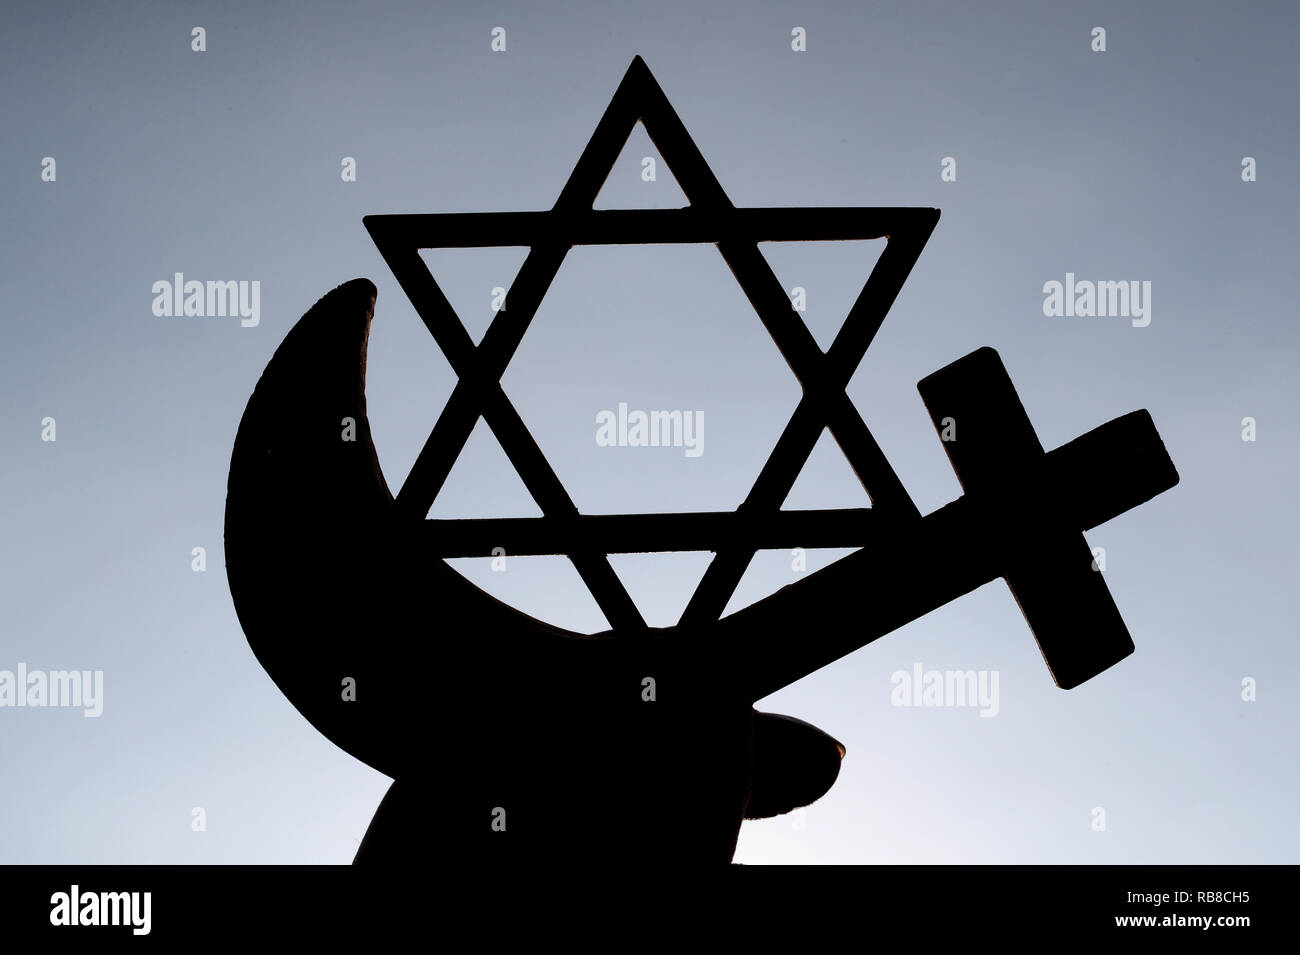 Symboles interreligioso. El cristianismo, el Islam, el Judaísmo 3 religiones monoteístas. La estrella judía, la Cruz y la Media Luna Roja : Interreligieuse símbolos en las manos. Foto de stock